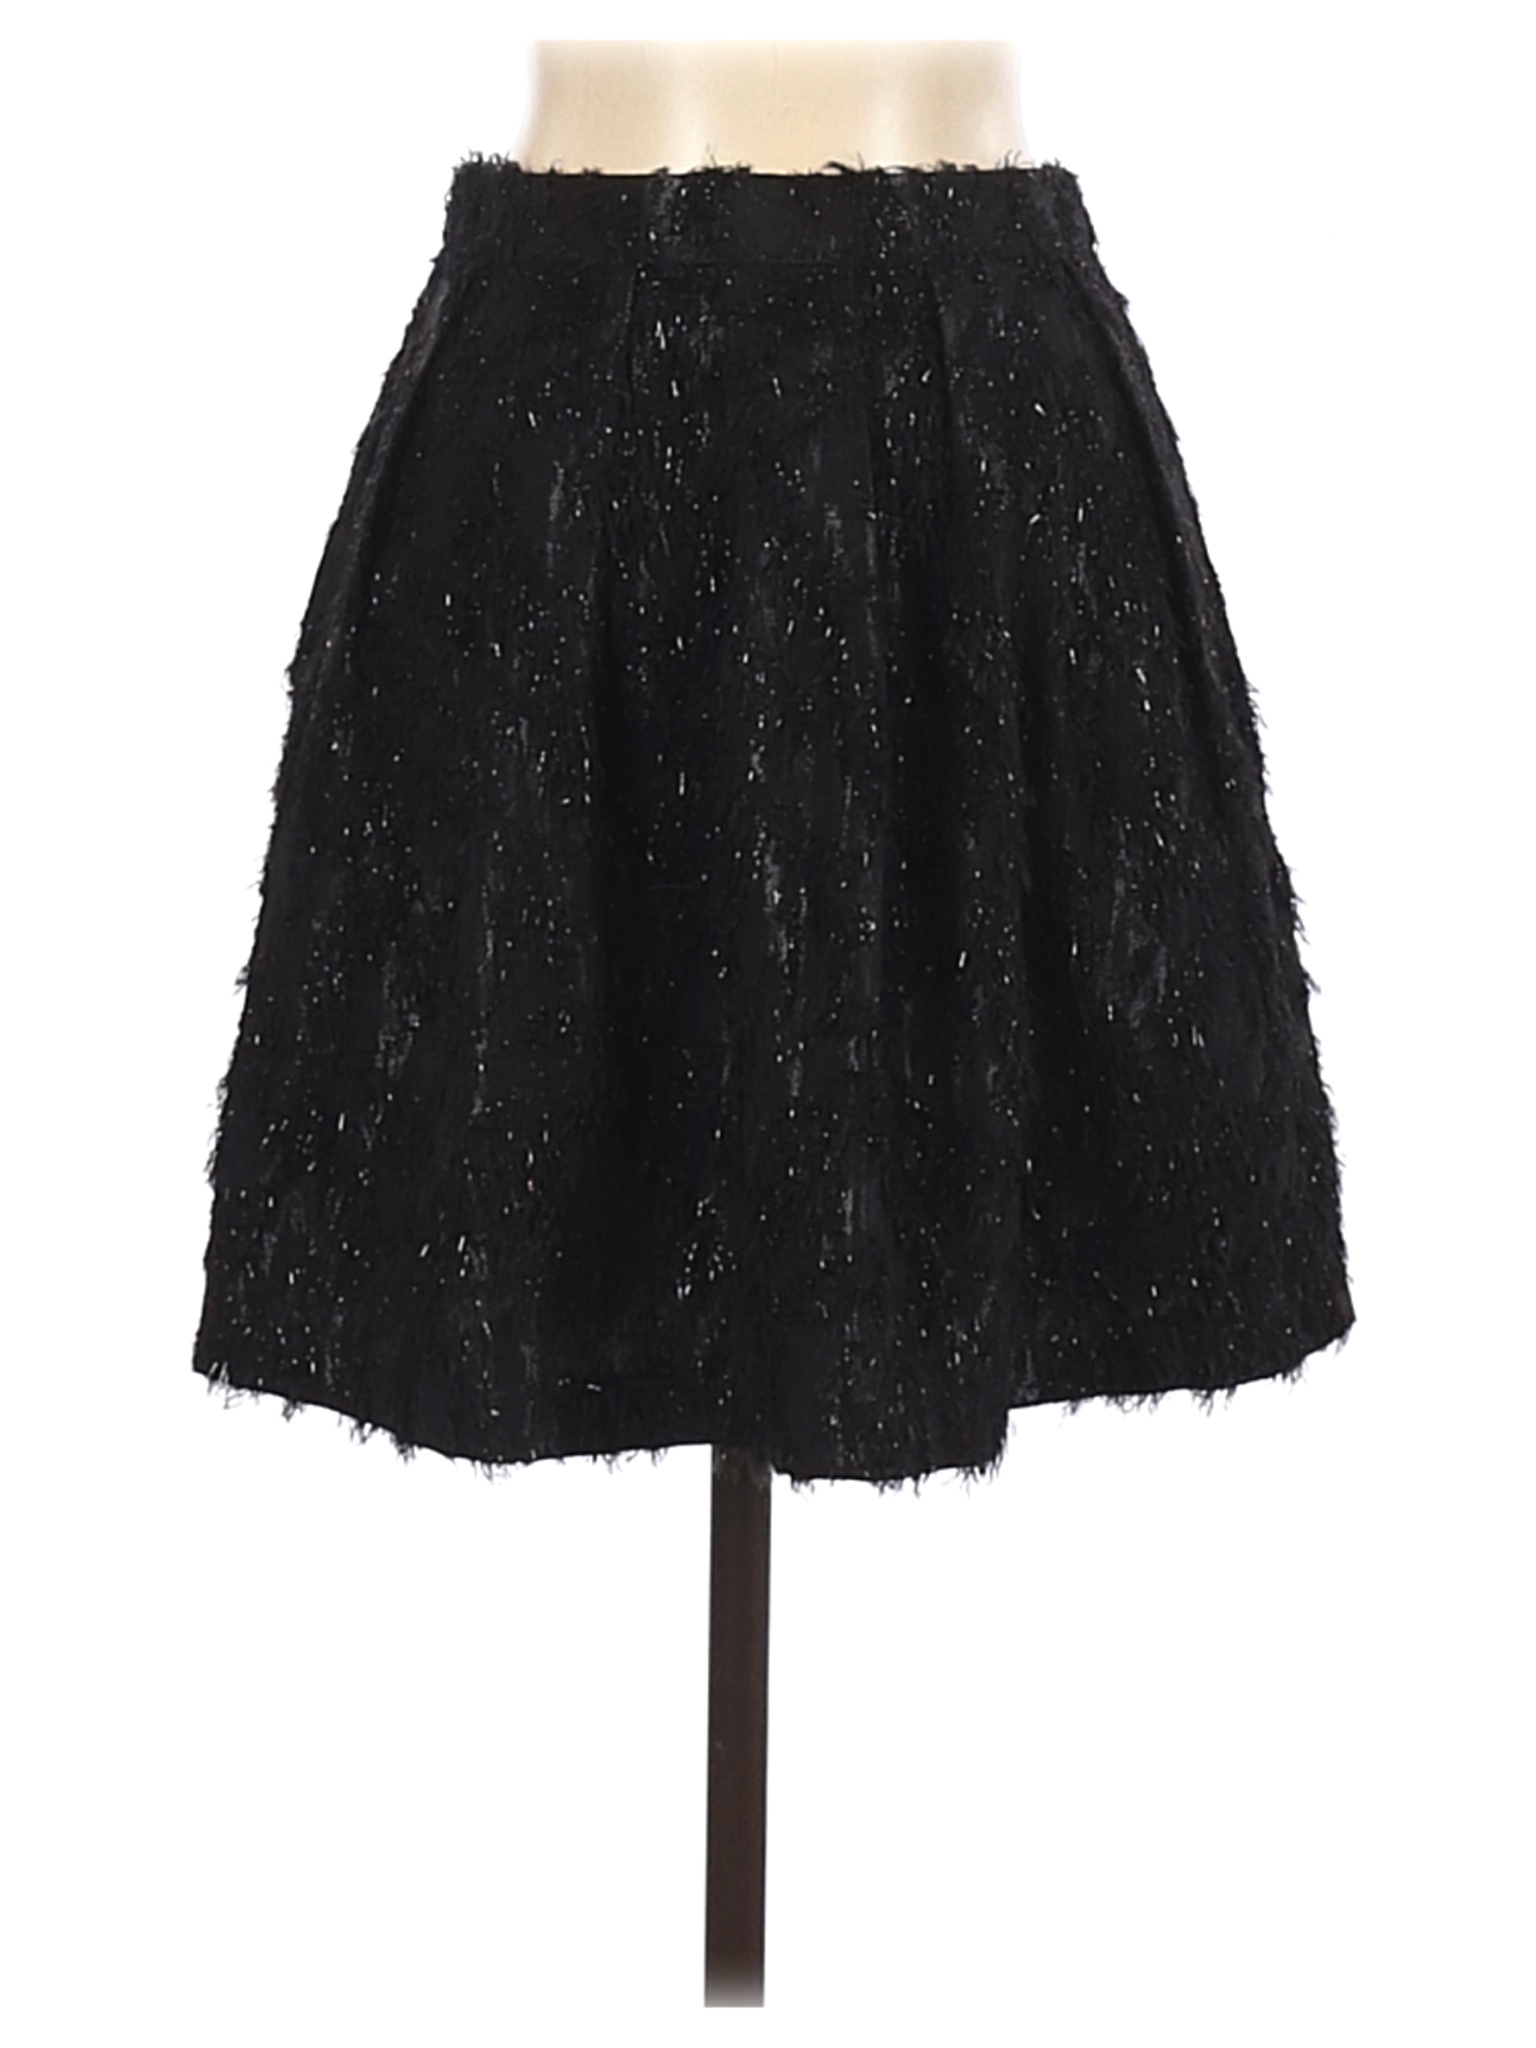 Topshop Women Black Formal Skirt 4 | eBay